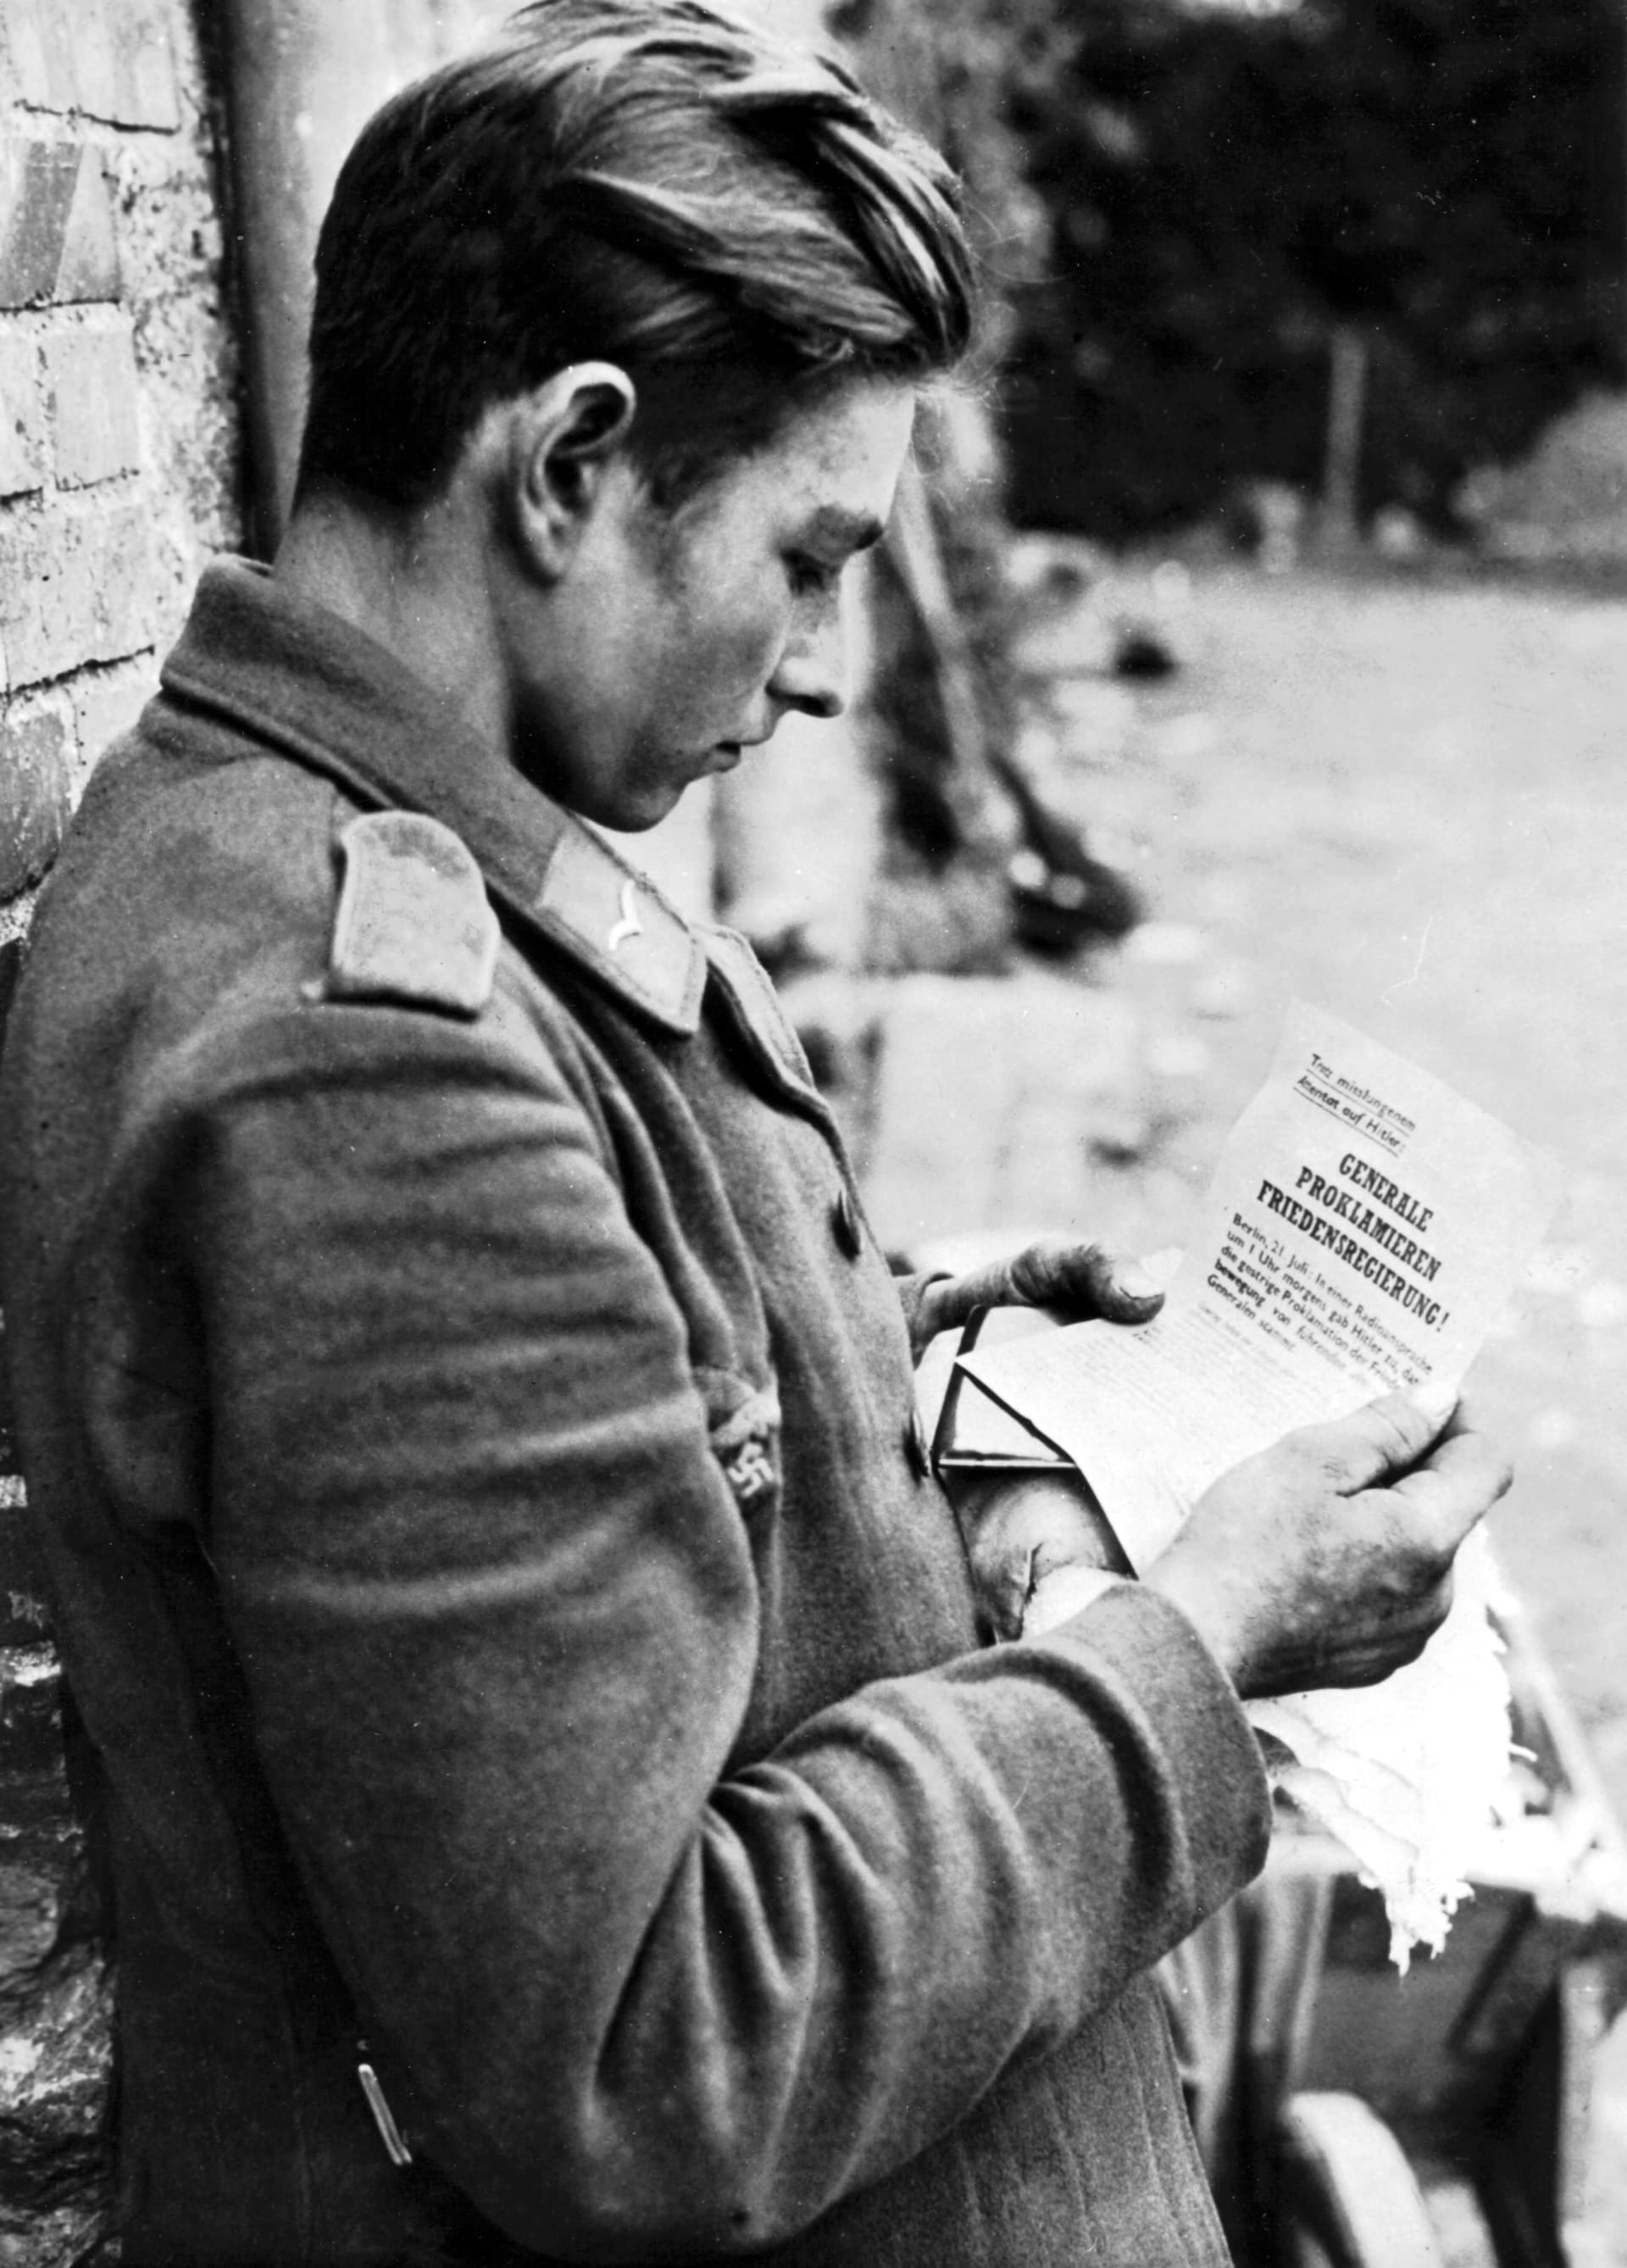 Německý vězeň si čte svůj leták